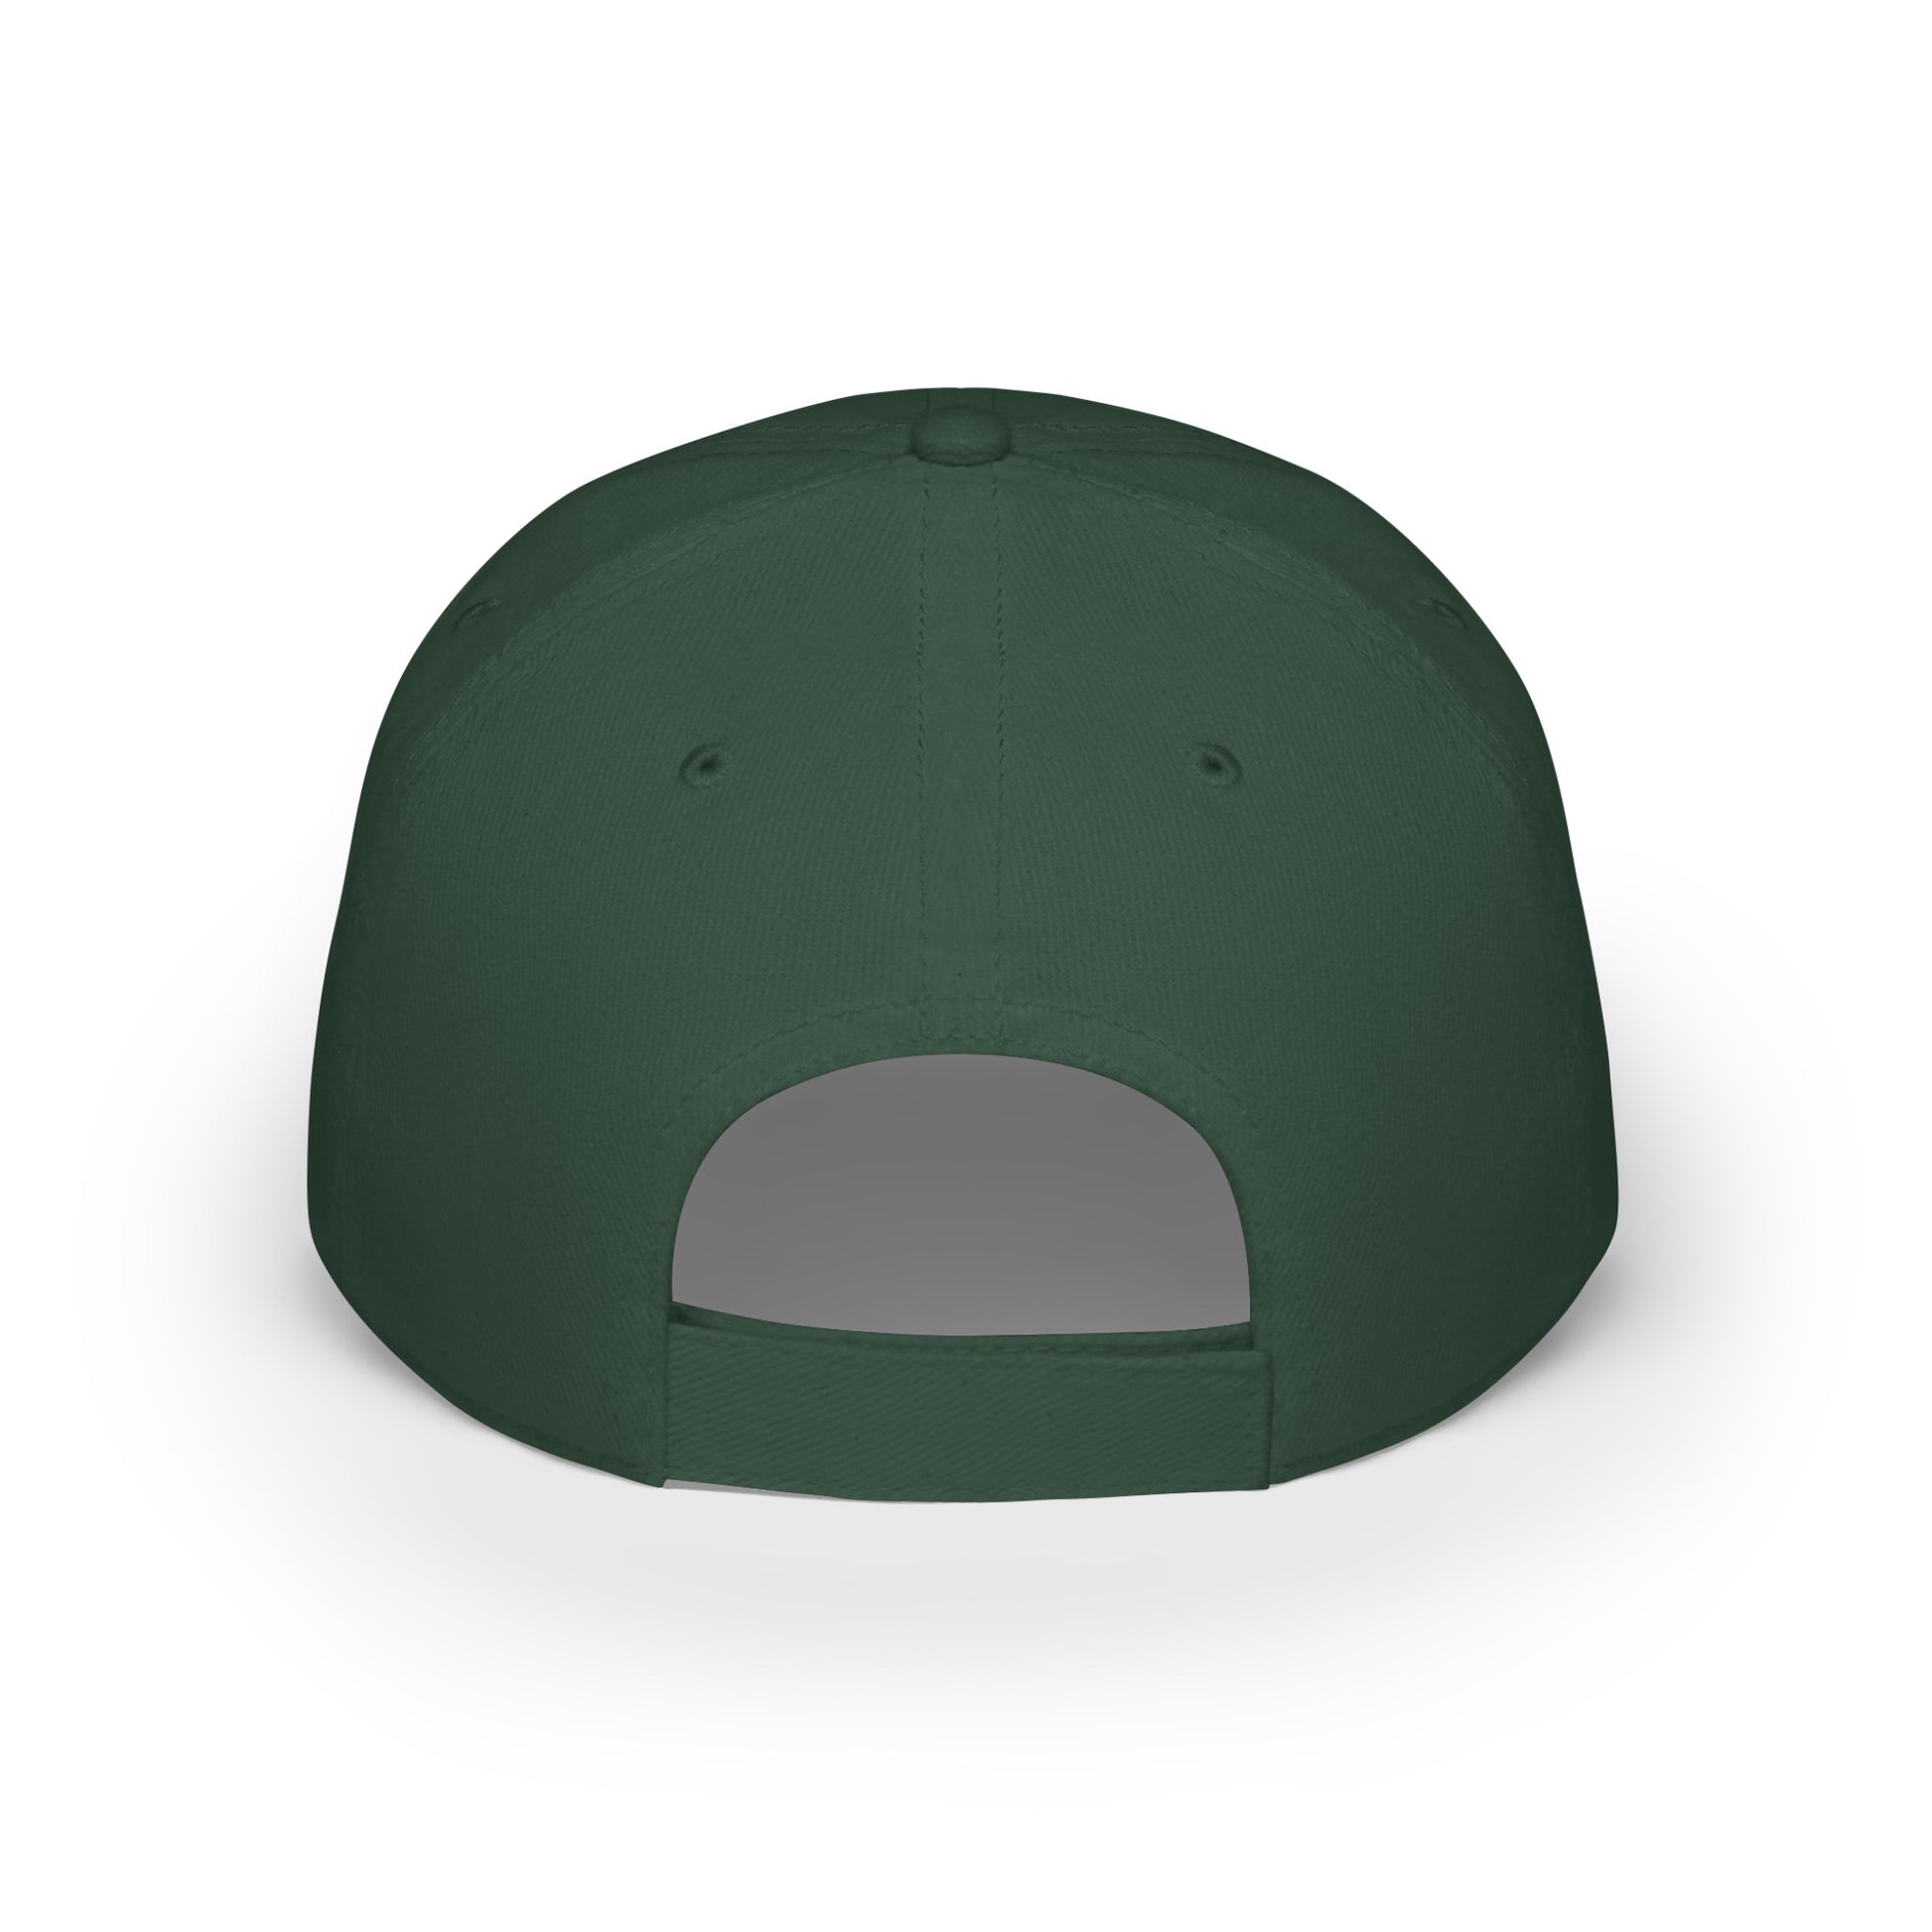 MDBTDJ#SBWC - Low Profile Baseball Cap Tattooed Dj's Limited Edition, Hats, Tattooed Djs Shop